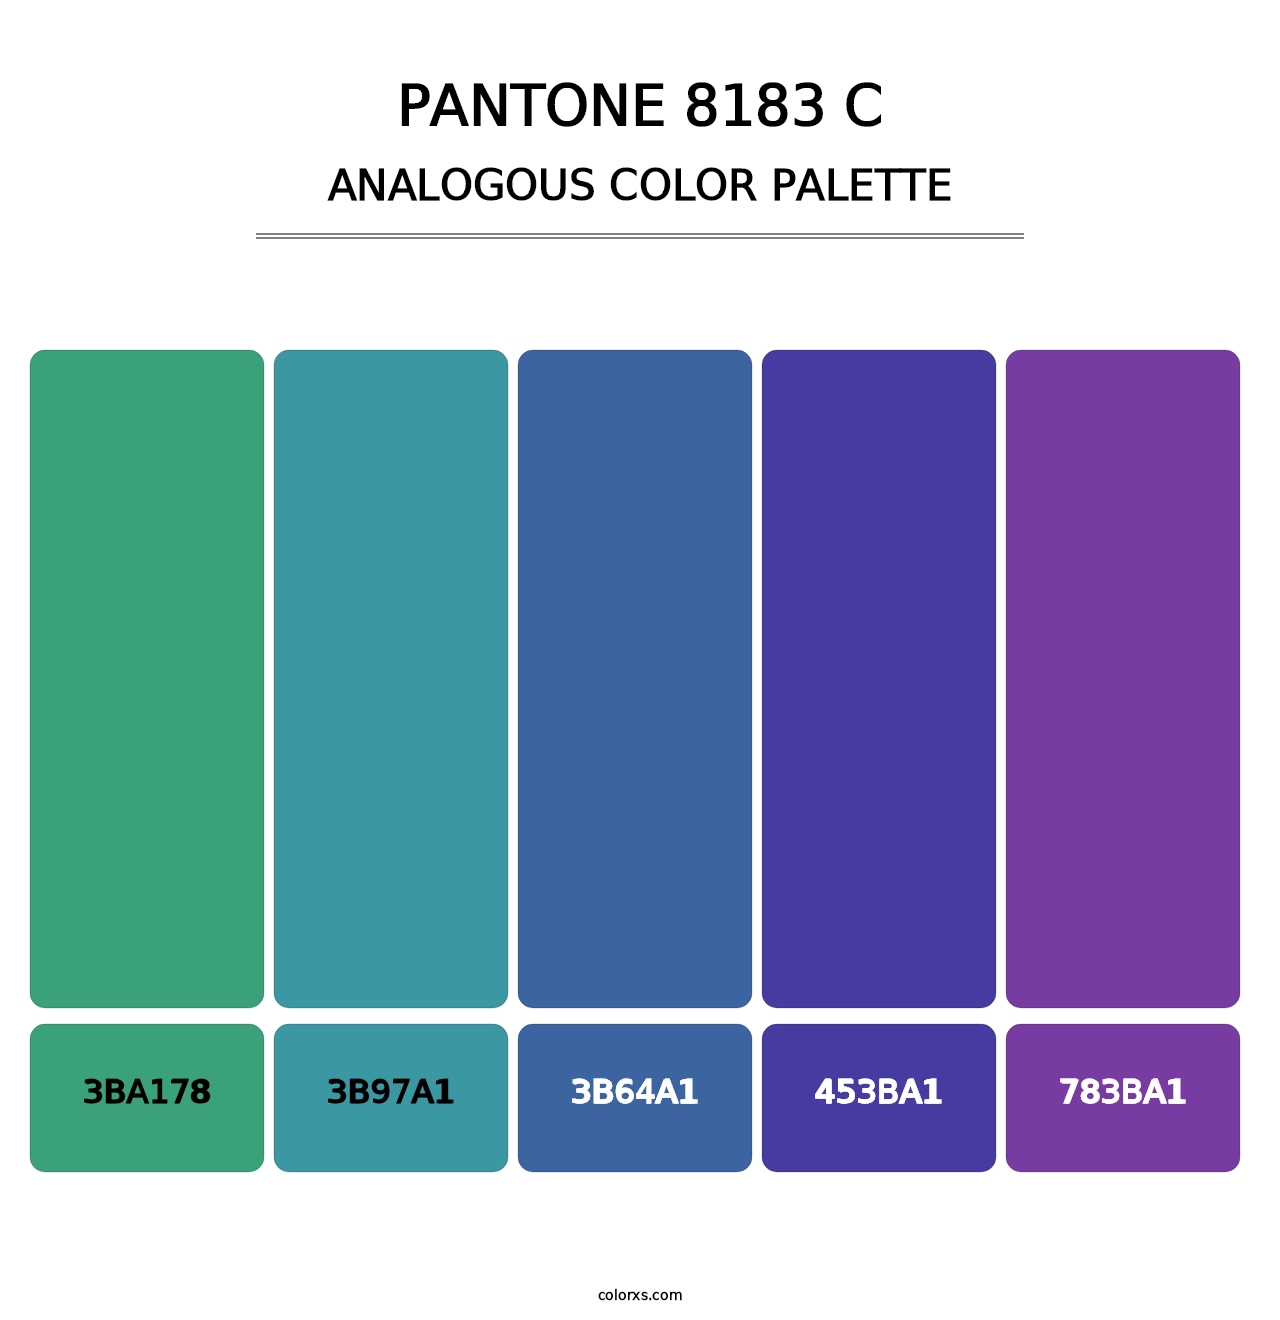 PANTONE 8183 C - Analogous Color Palette